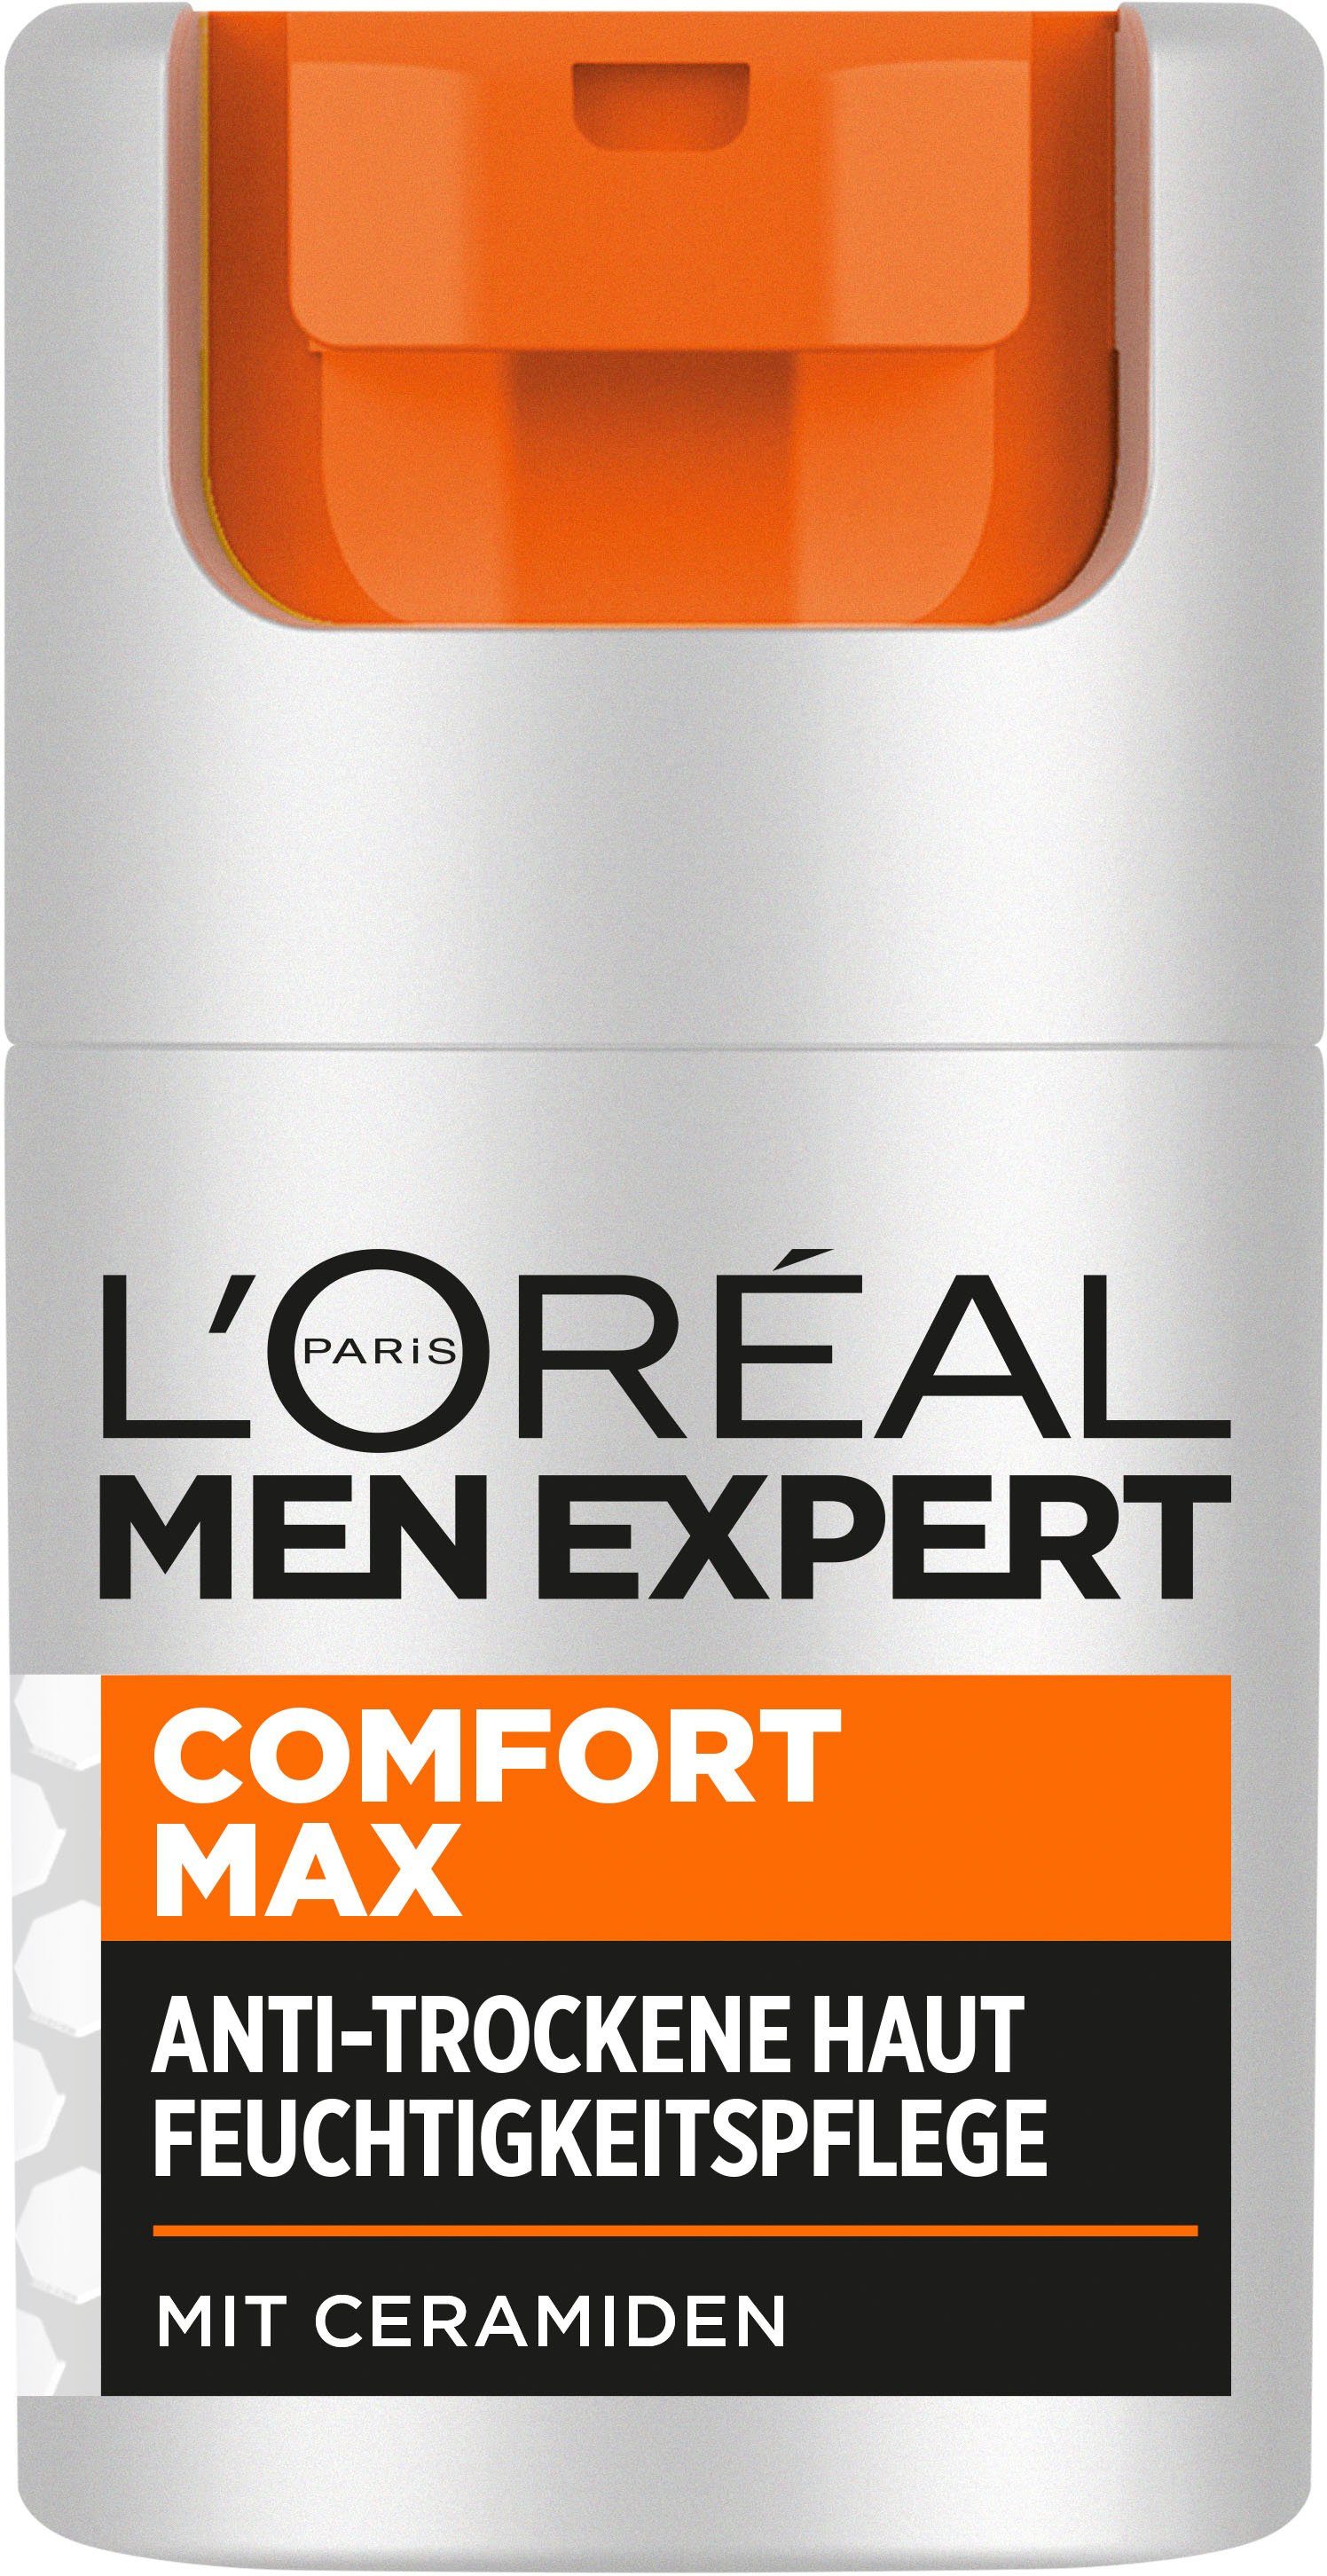 L'ORÉAL PARIS MEN EXPERT Gesichtsgel Max Comfort Feuchtigkeitspflege L'Oréal Men Expert